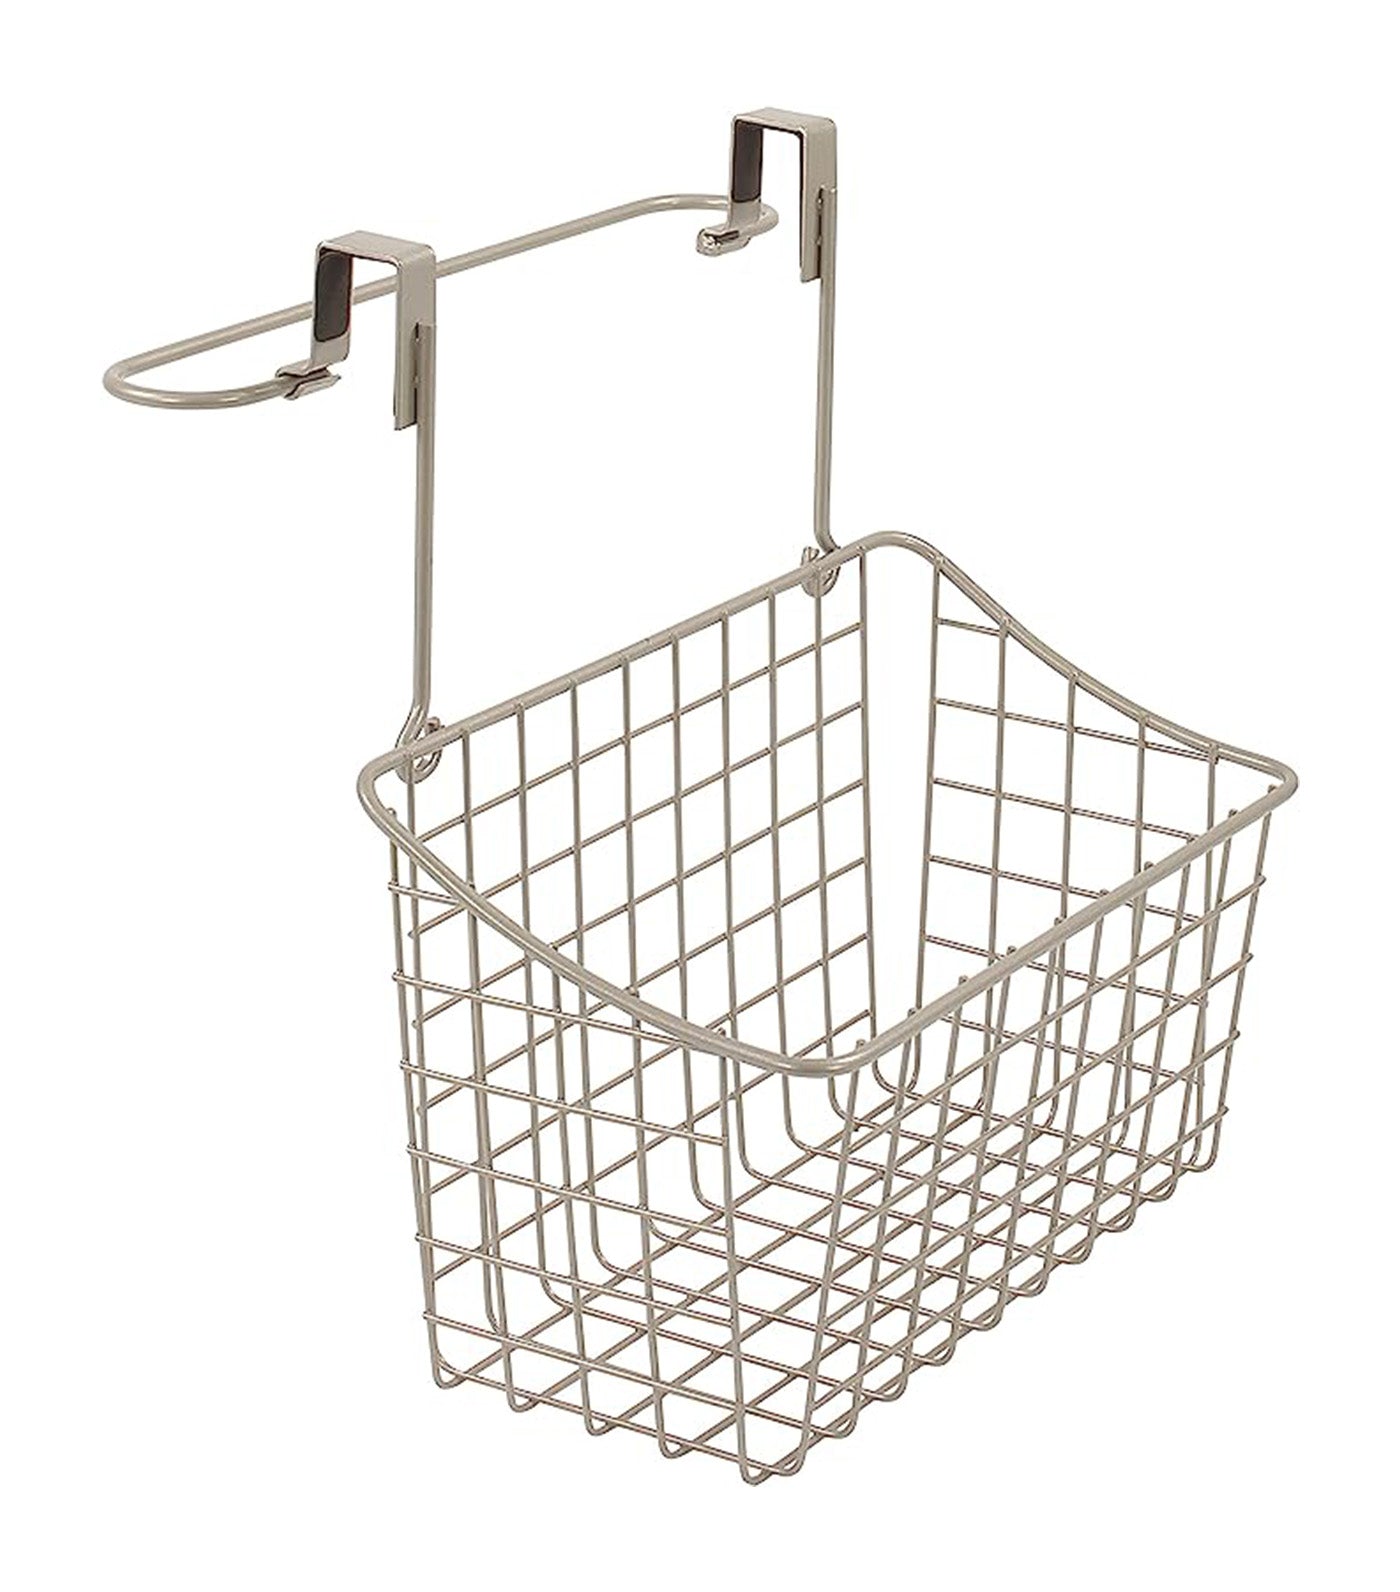 Makeroom Grid Towel Bar and Basket